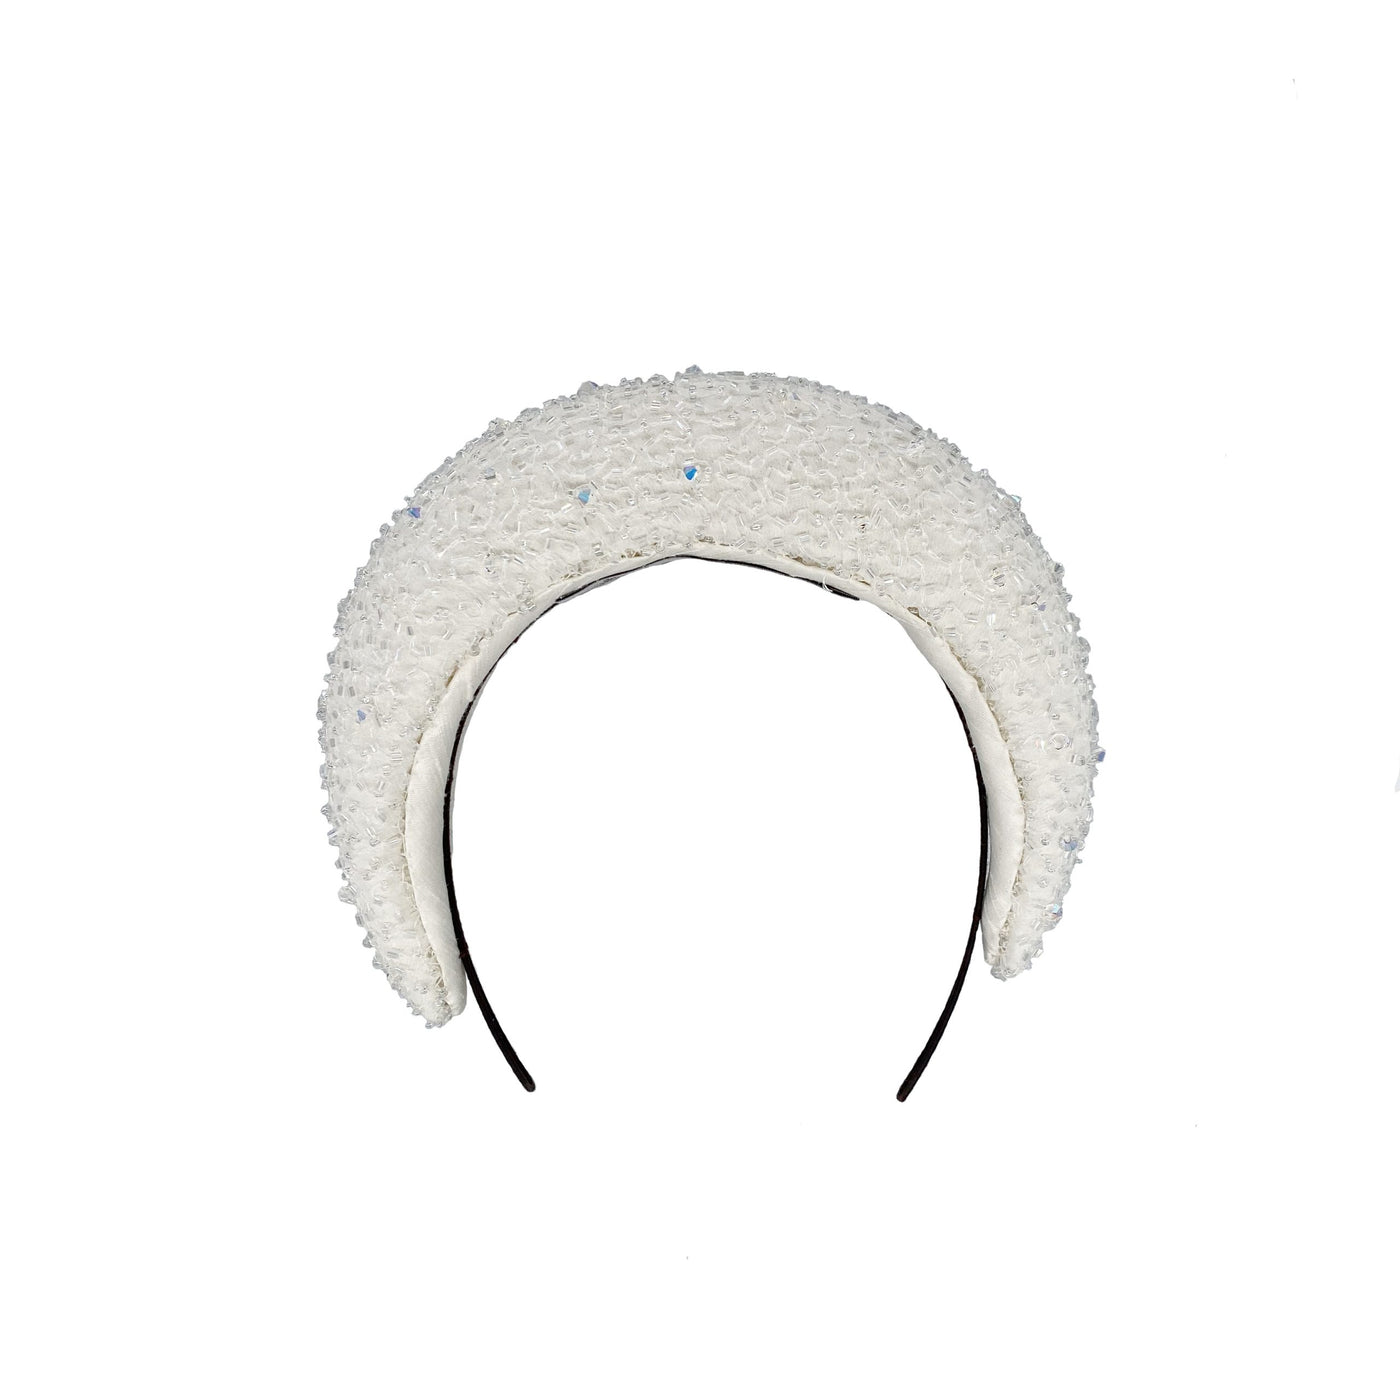 Ivory silk beaded headband